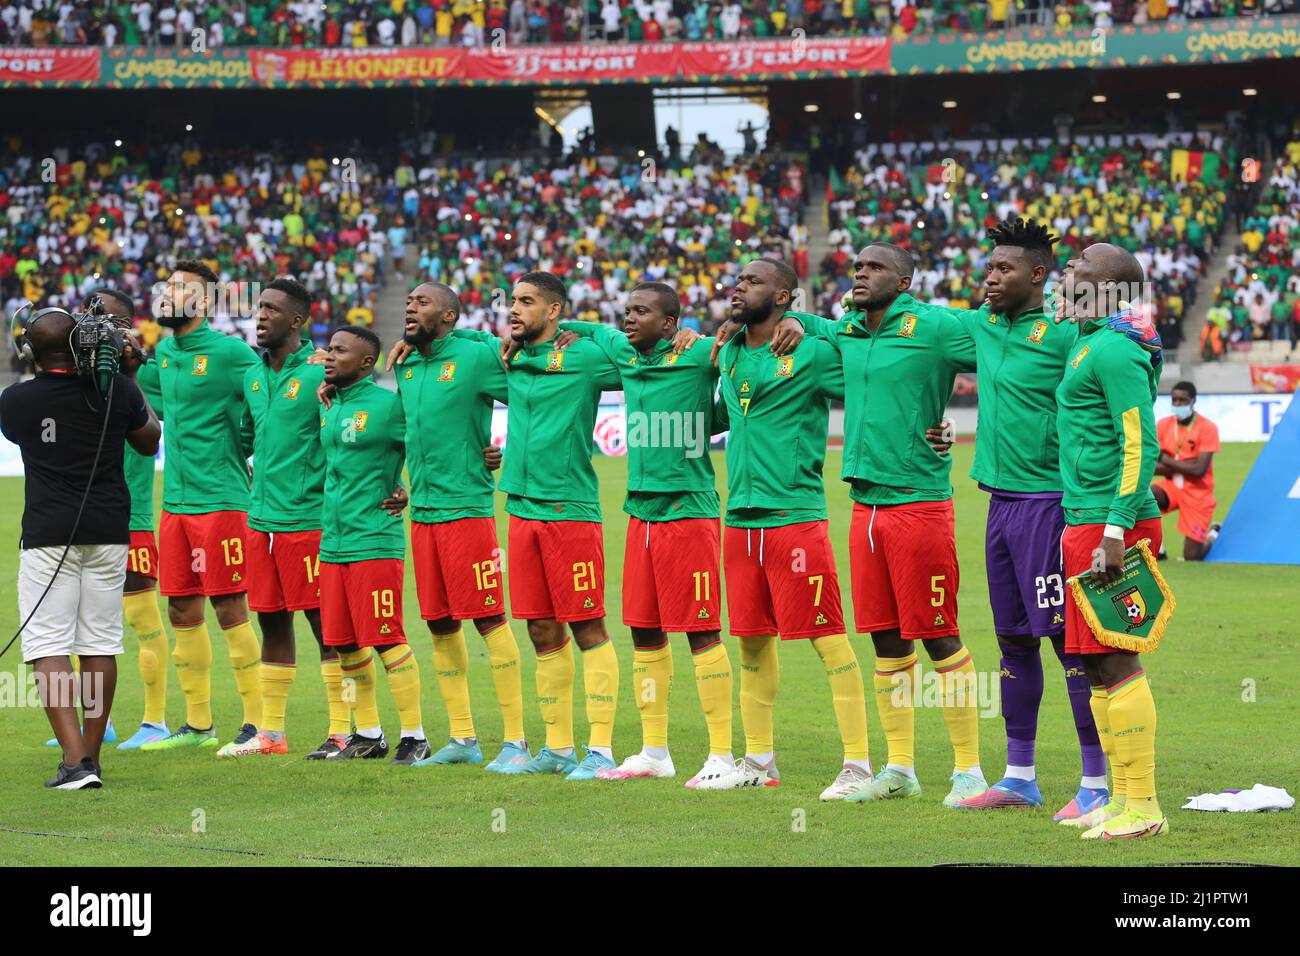 L'Algérie a battu le Cameroun 1-0 lors du tour de qualification de la coupe du monde de la FIFA 2022 au Qatar, le but a été marqué par Islam Slimani, au stade Jaboma, à Douala, au Cameroun, le 25 mars, 2022. Photo de Hamza Bouhara/ABACAPRESS.COM Banque D'Images